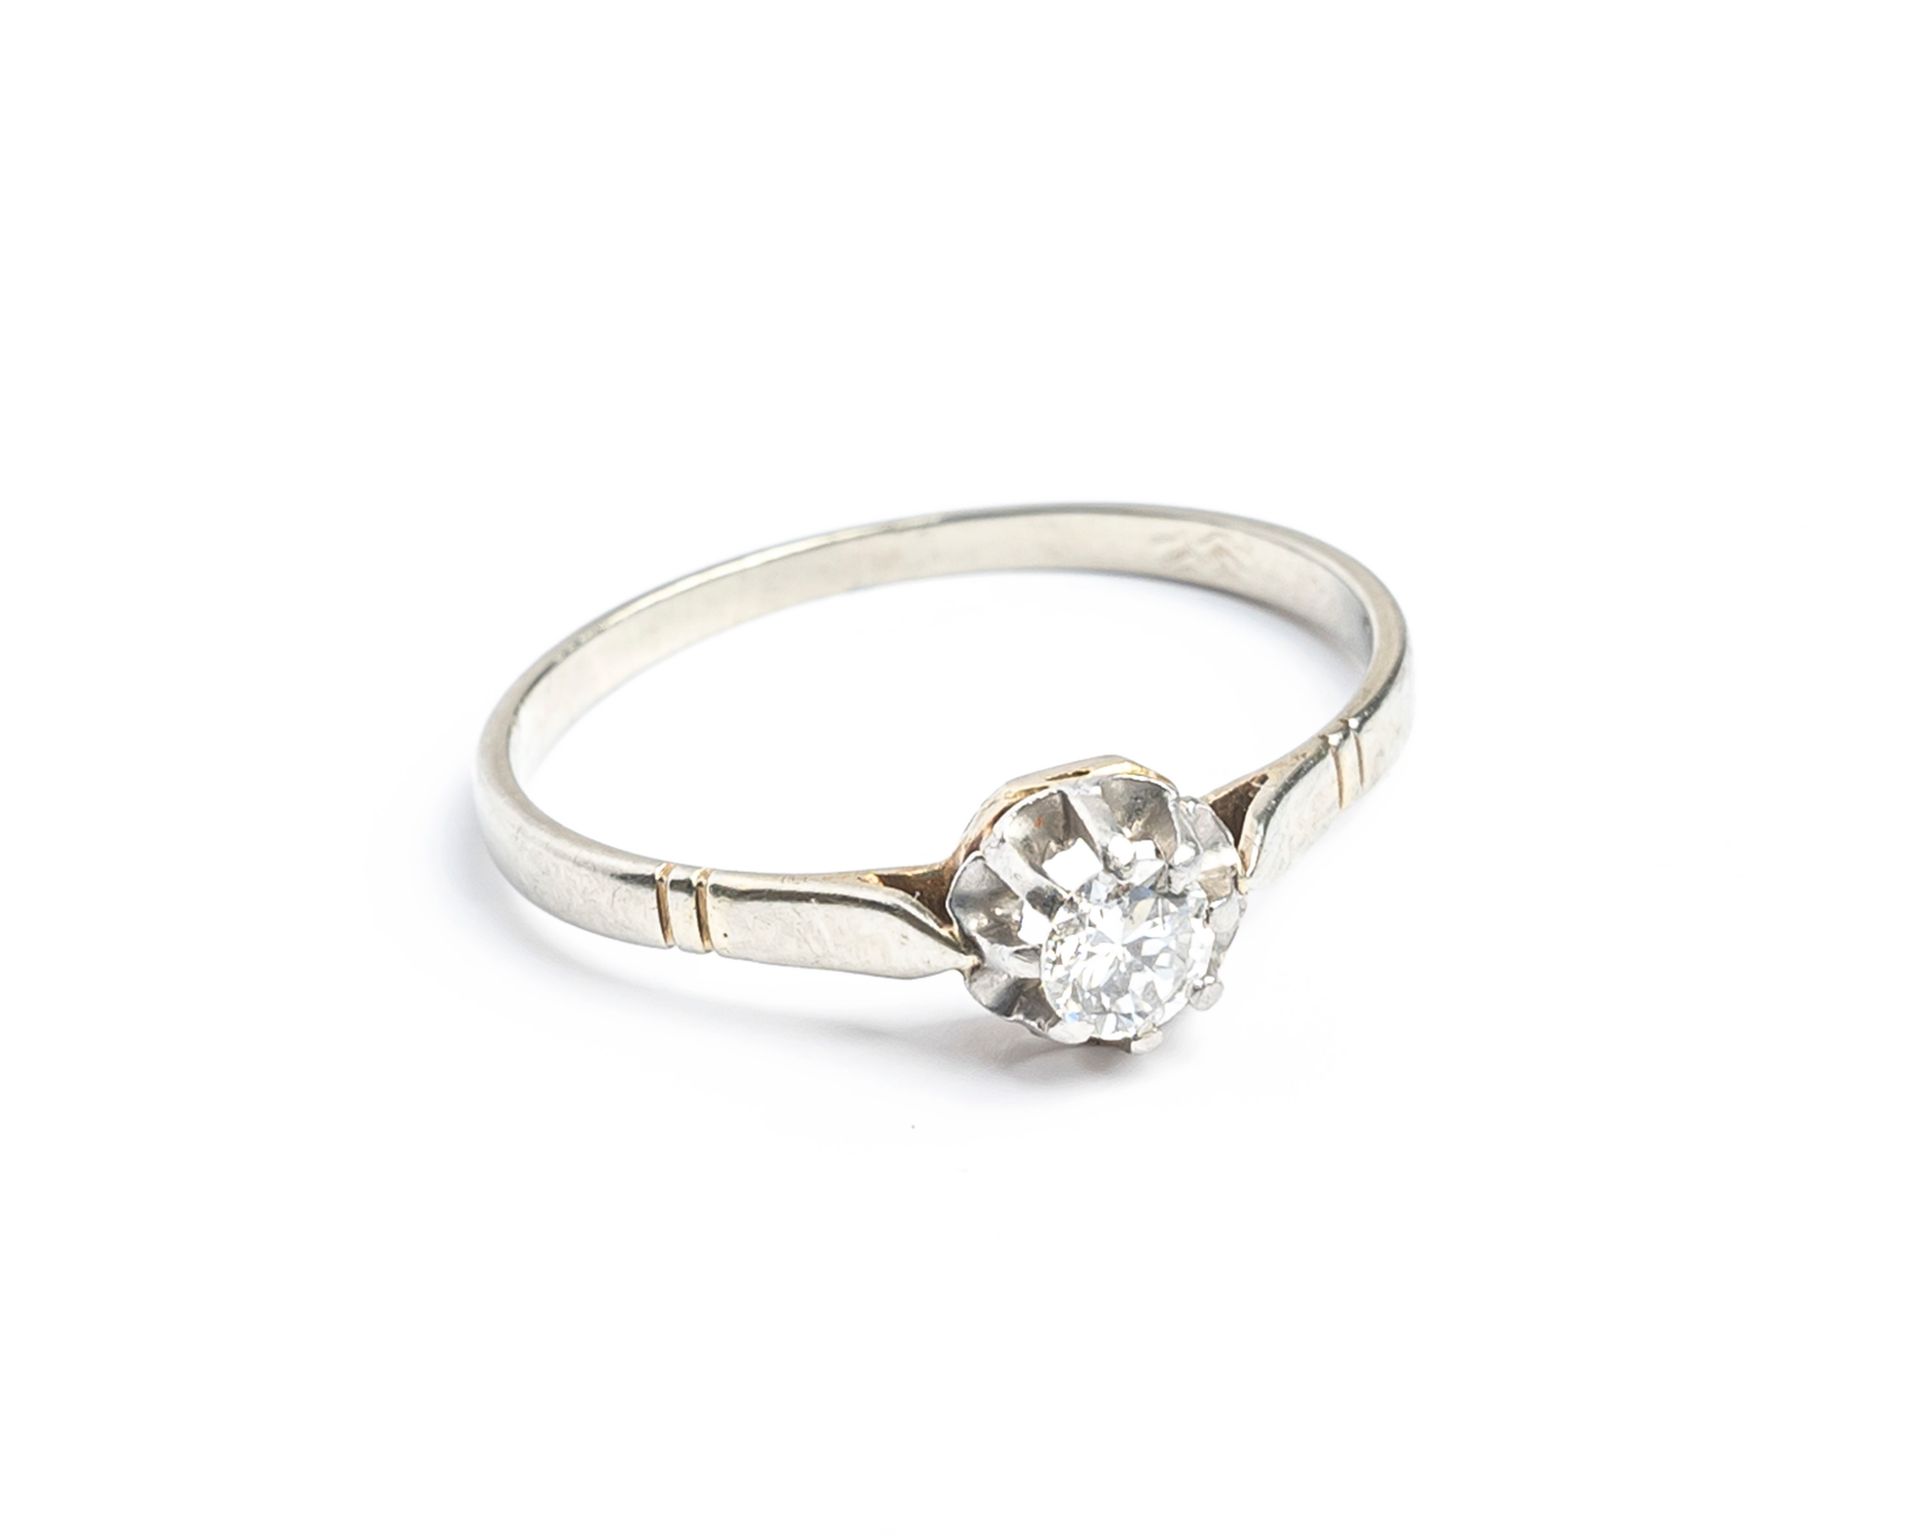 Null 18K（千分之七十五）白金和铂金单钻戒指，镶有一颗圆形明亮式切割钻石，重约0.20克拉
手指尺寸：53
毛重 : 1.4 克